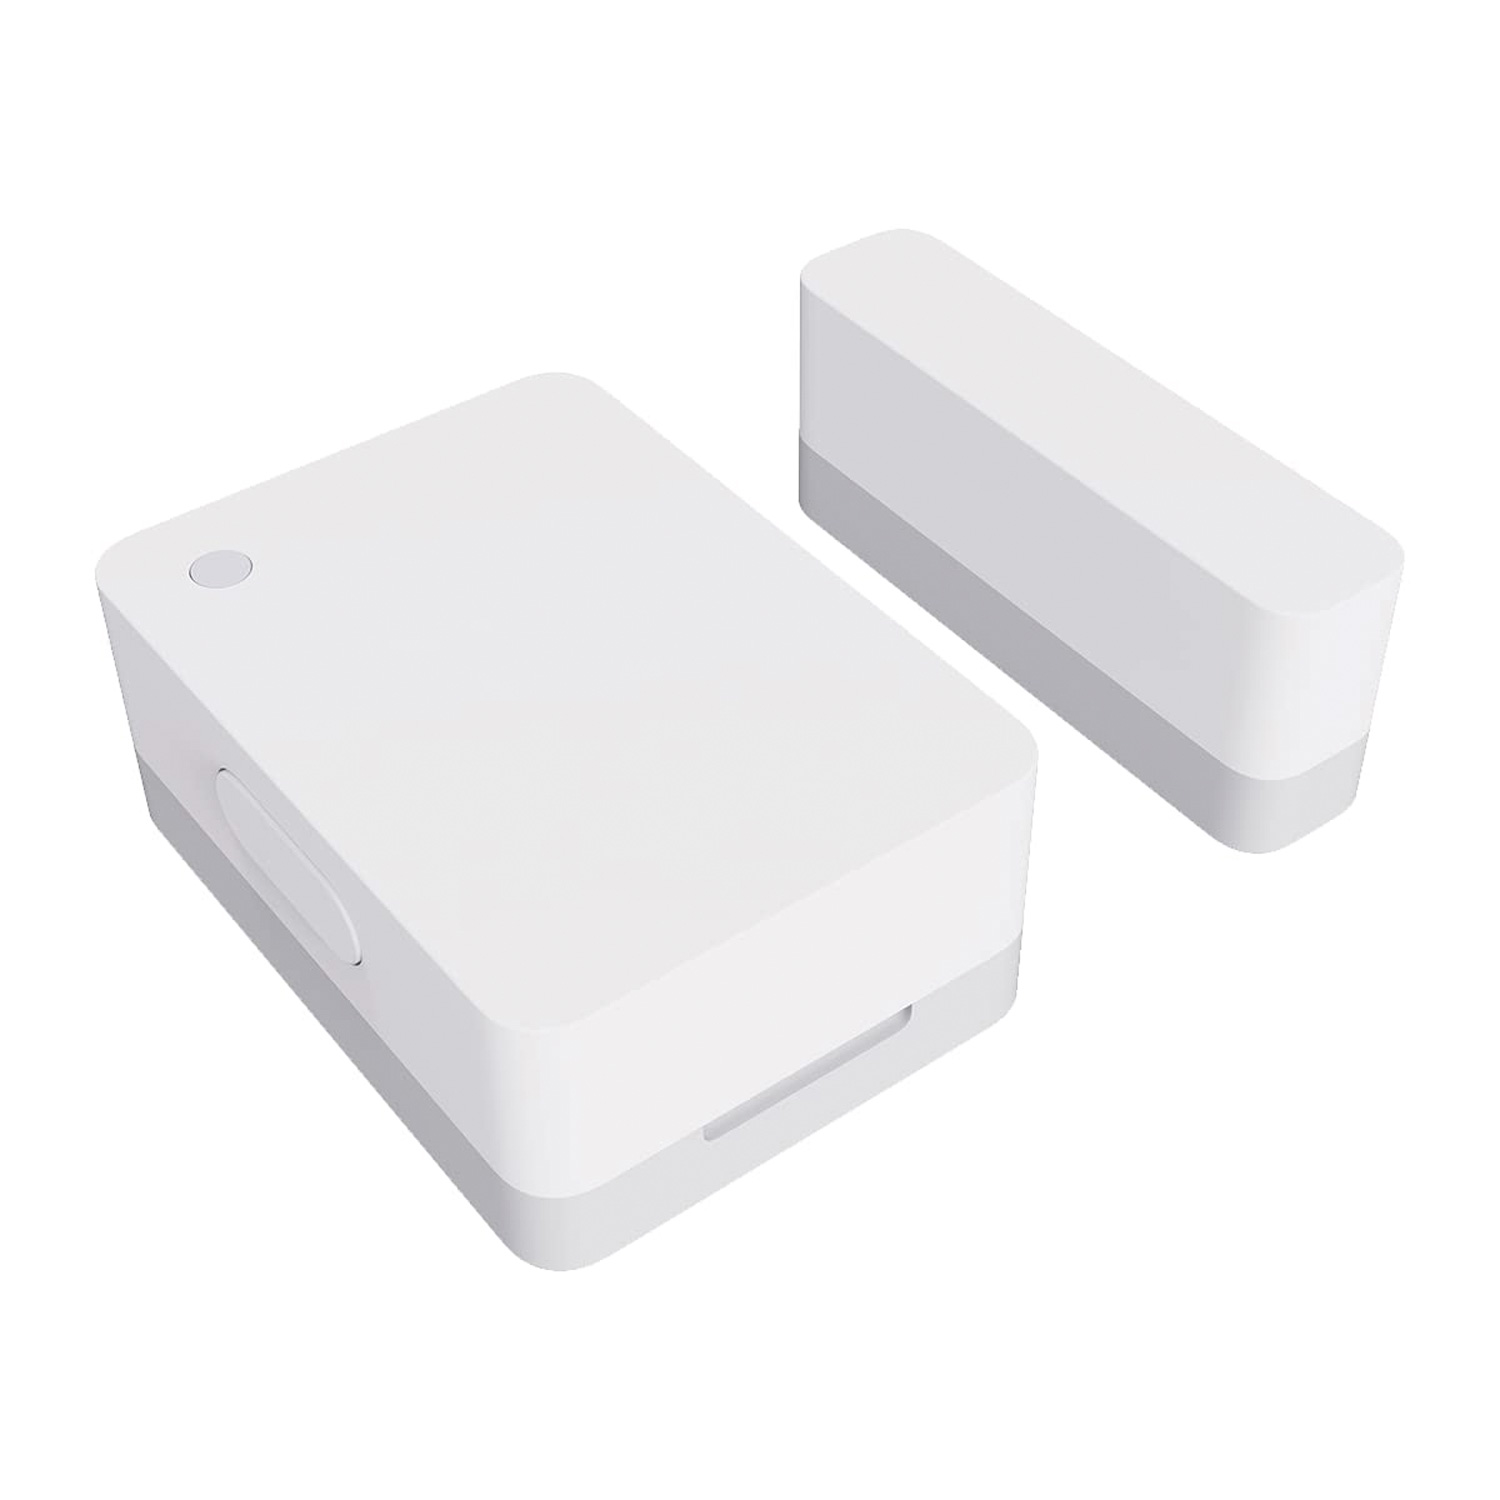 Sensor de Porta e Janela Xiaomi Mi 2 MCCGQ02HL - Branco